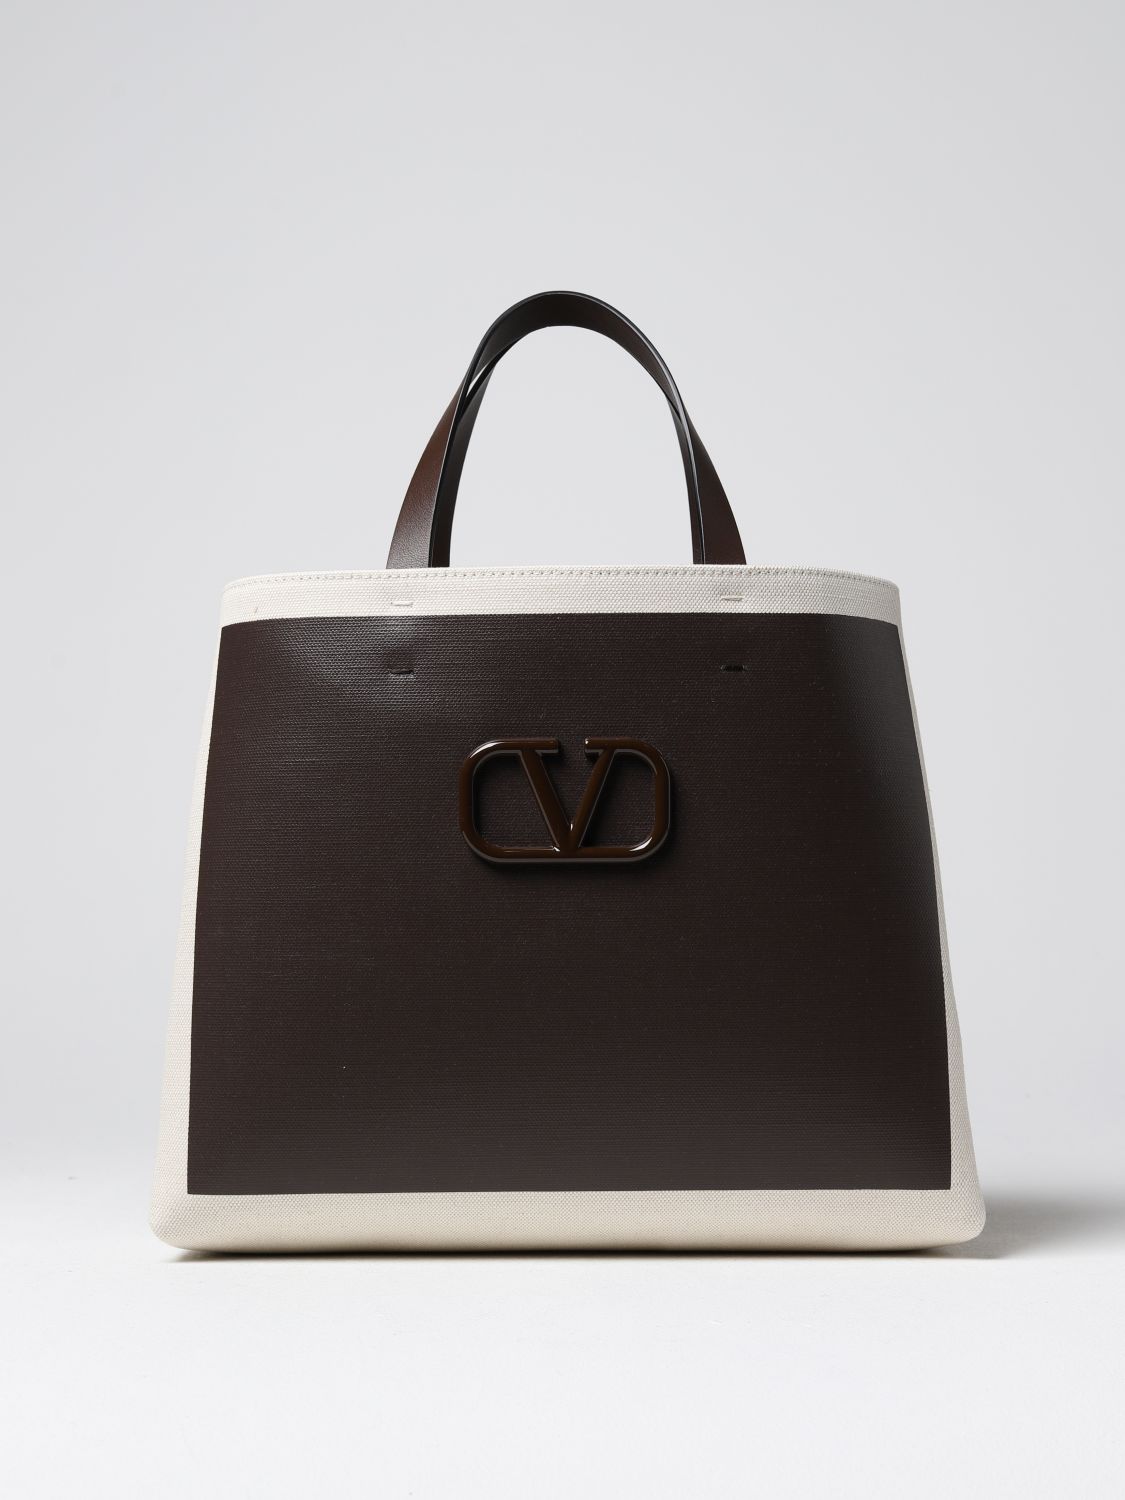 Valentino Garavani Vlogo Signature Tote Bag in Green Leather and Canva